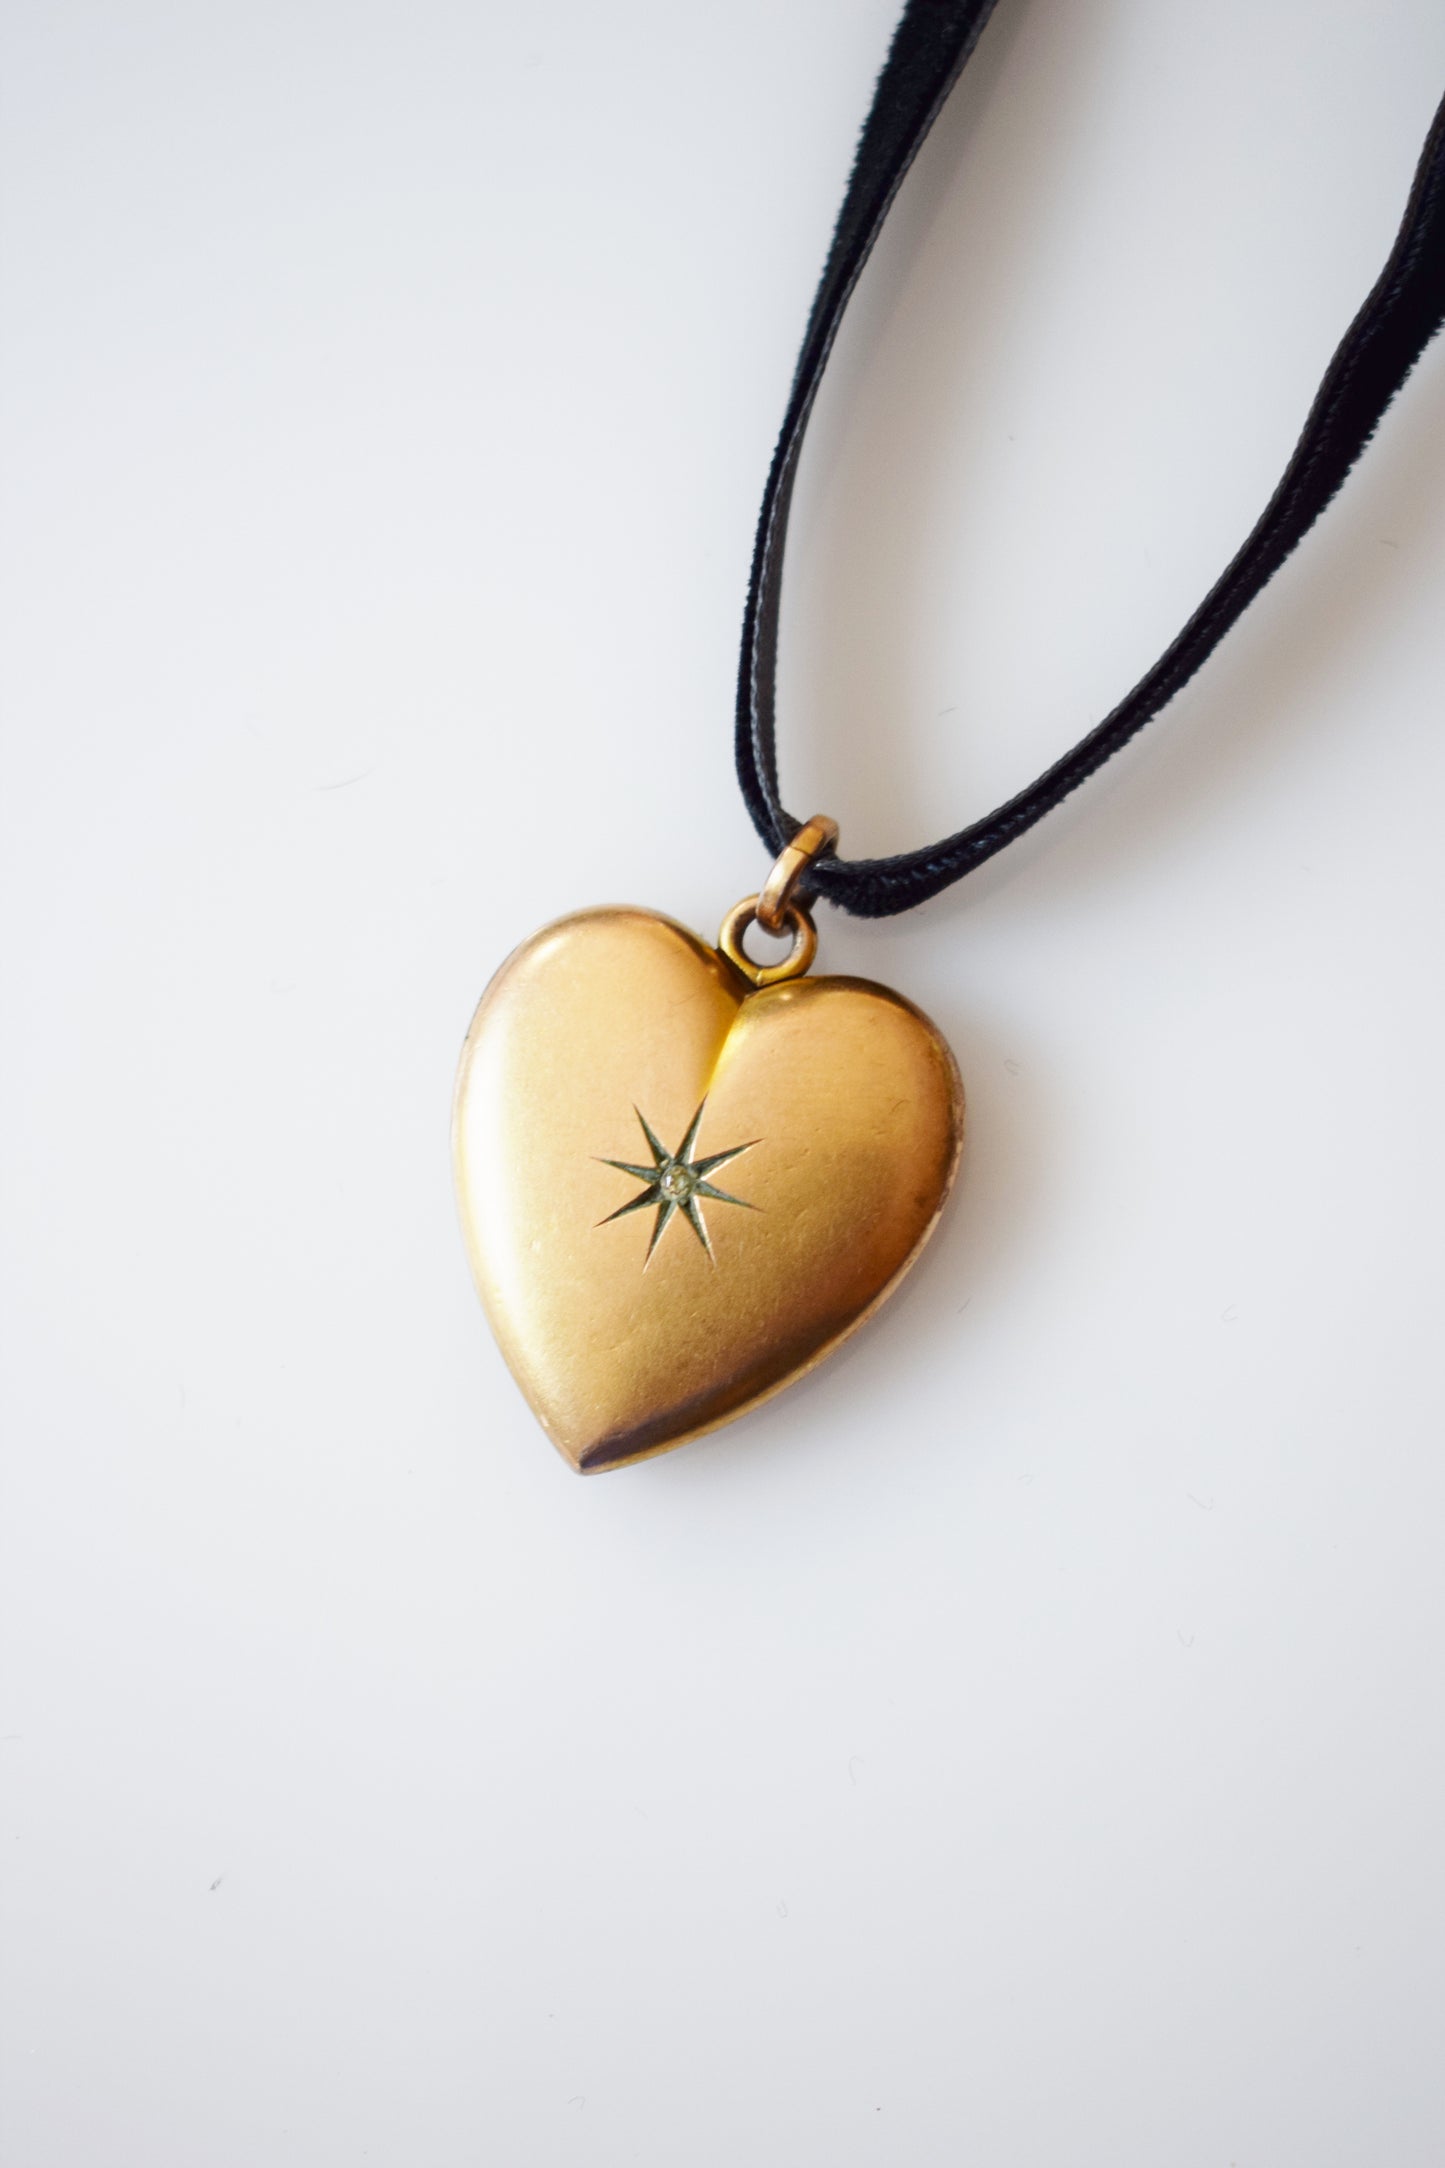 Antique Gold Heart Locket with Rhinestone Starburst